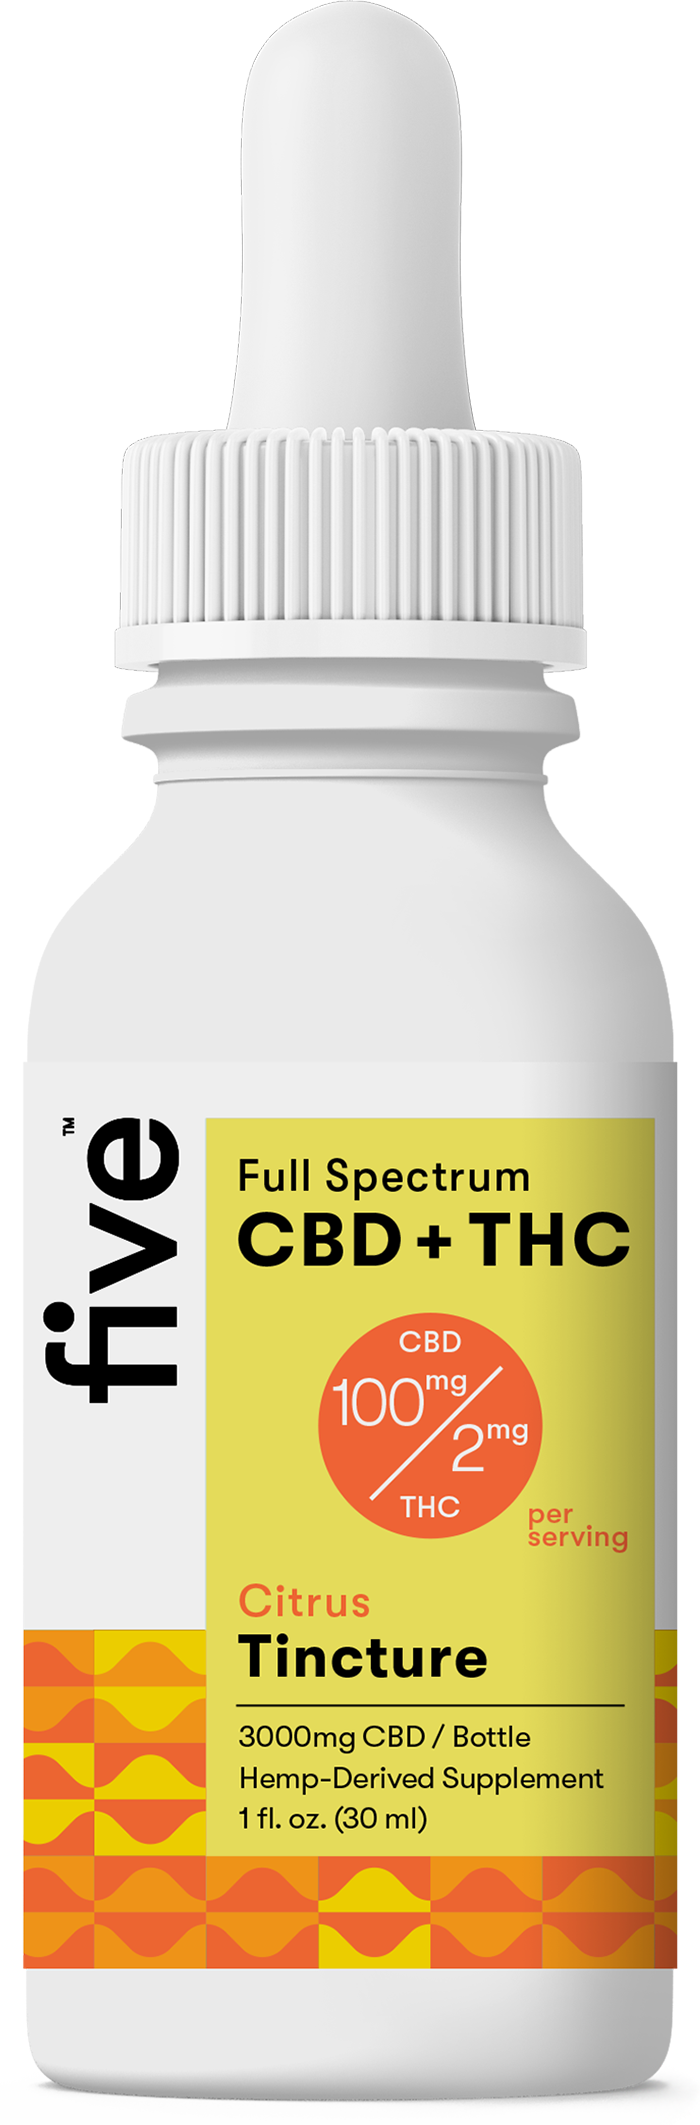 Full Spectrum CBD+THC Oil